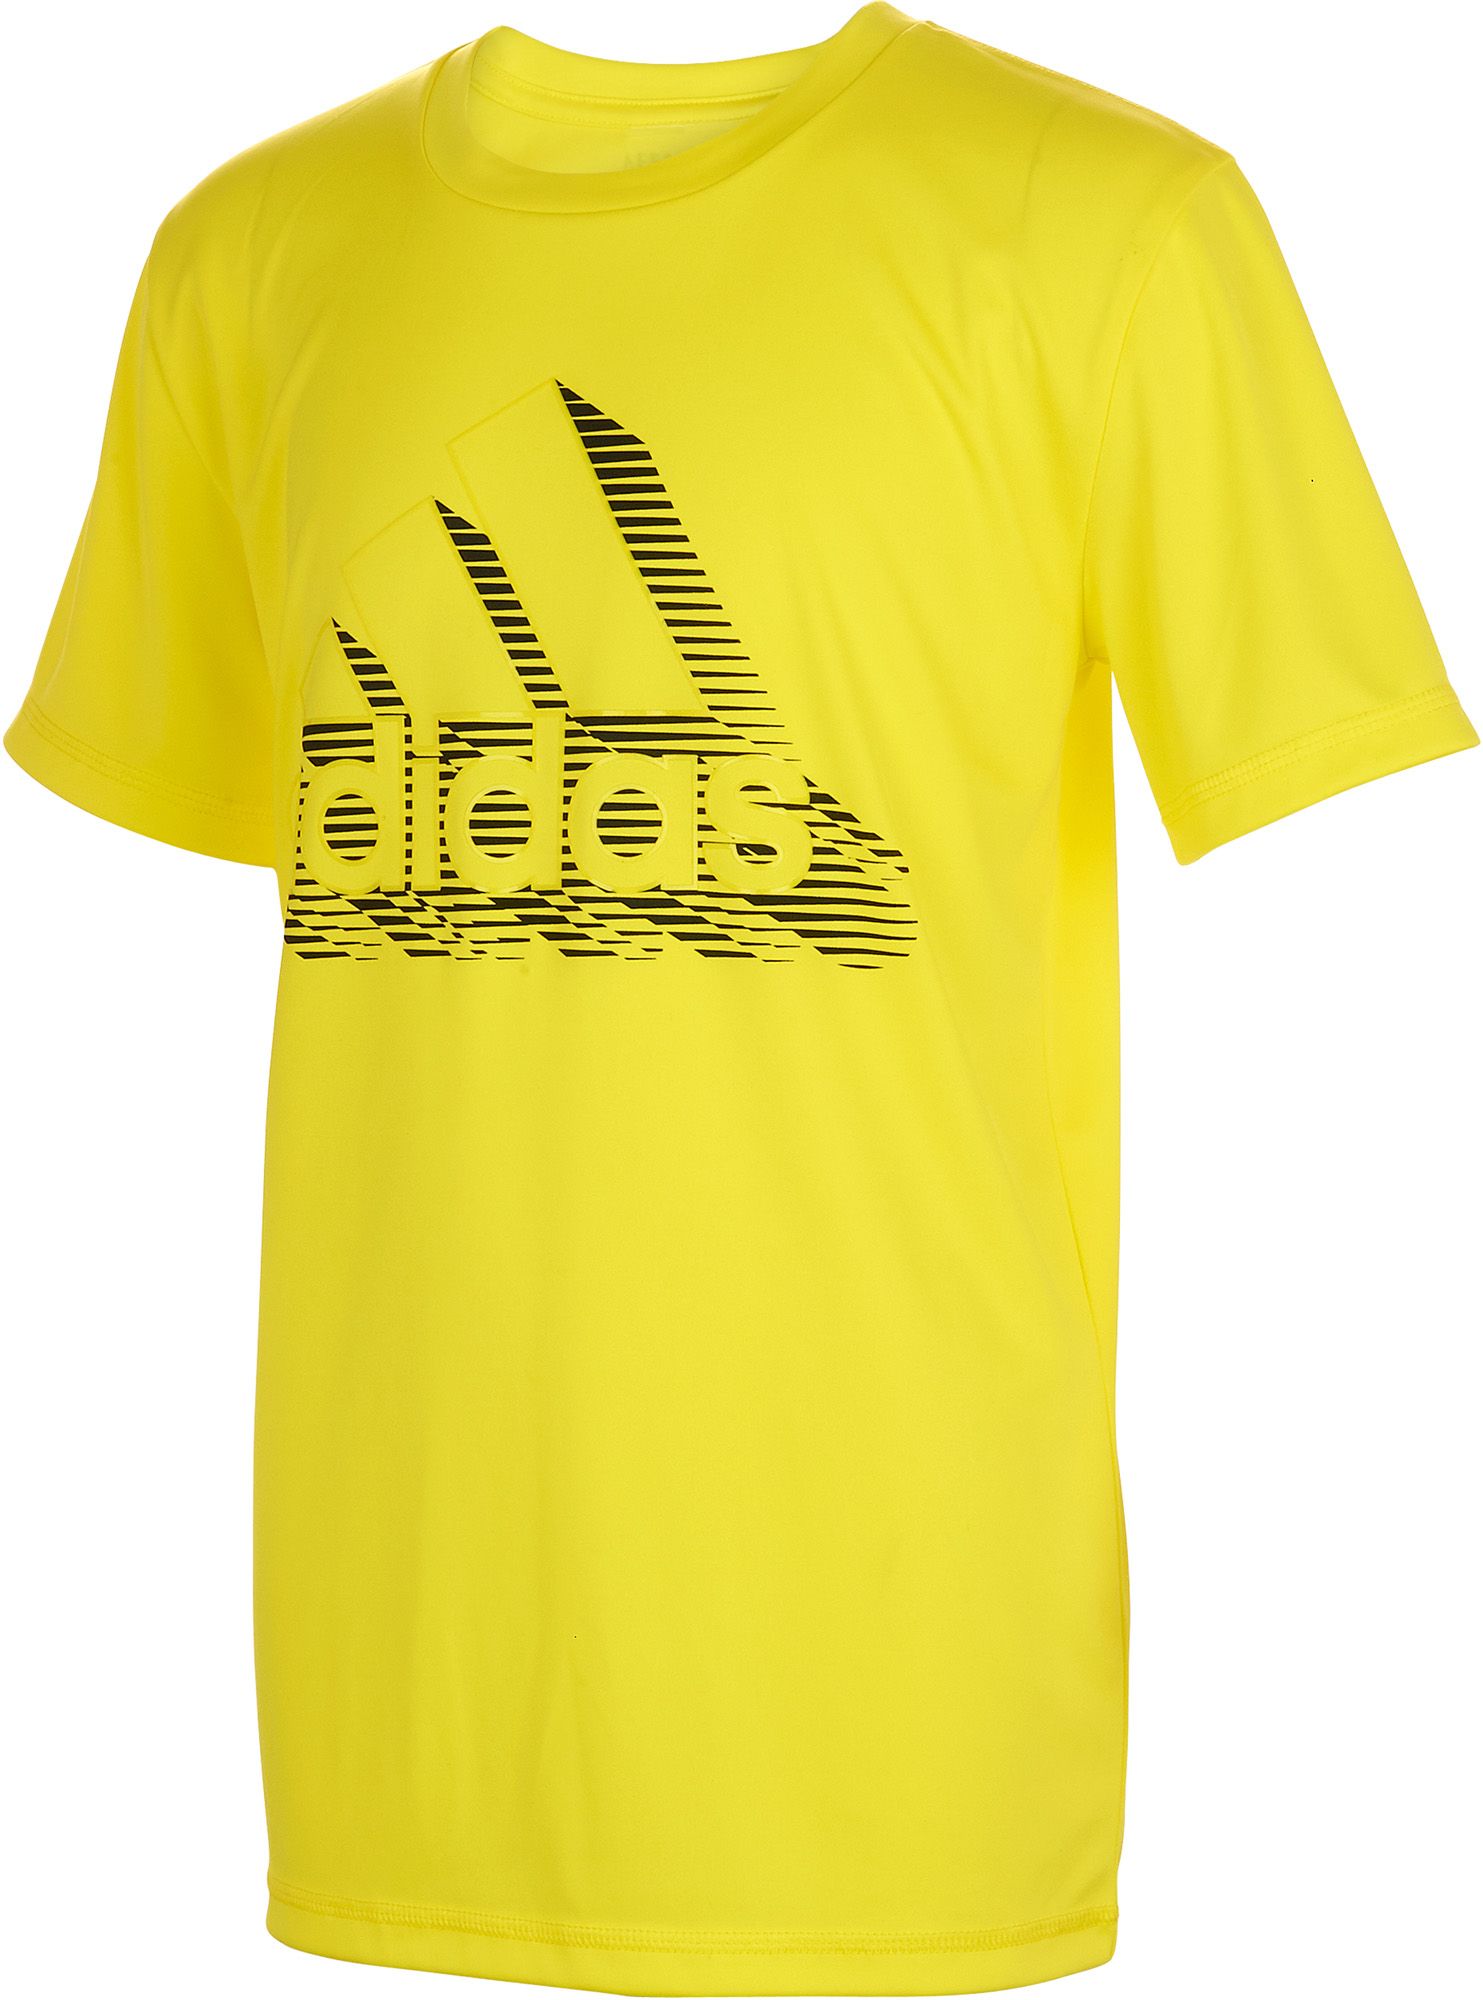 yellow adidas shirt mens